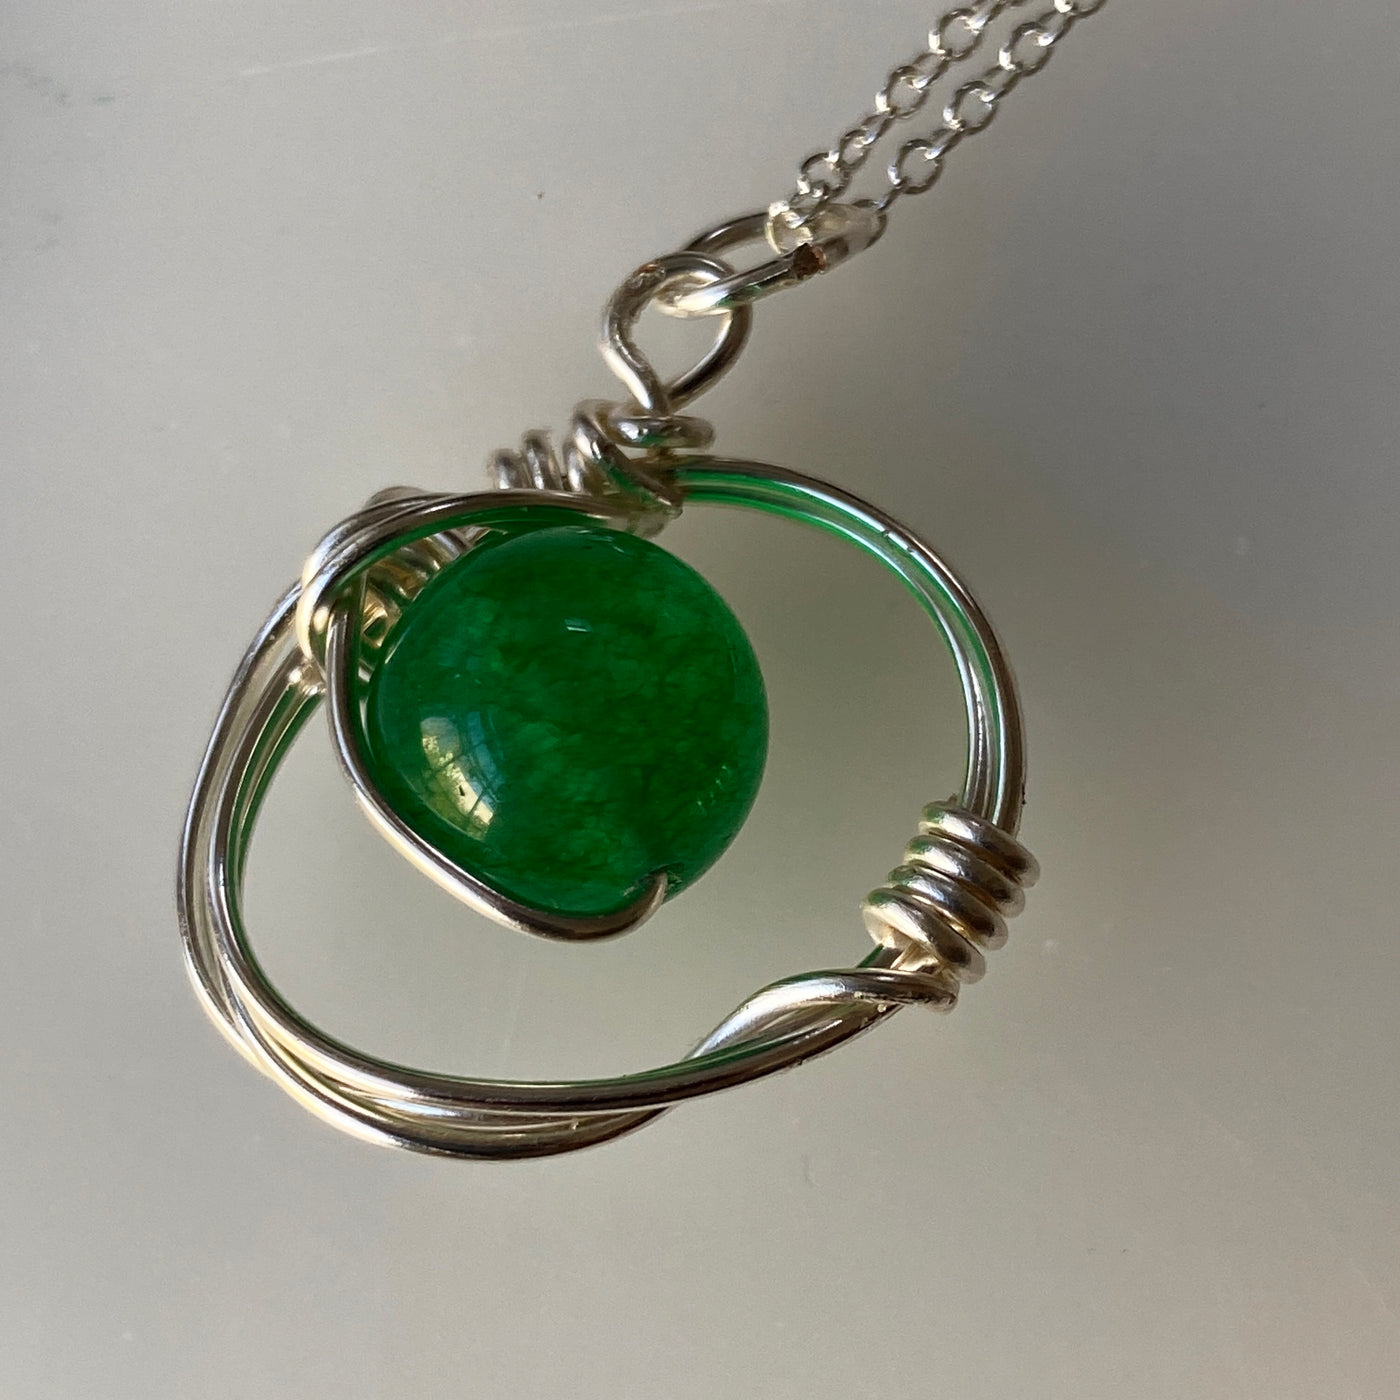 Calcédoine verte sur argent et chaîne pour la collection Shake and move. Ce pendentif mesure environ 2,5 cm de large.